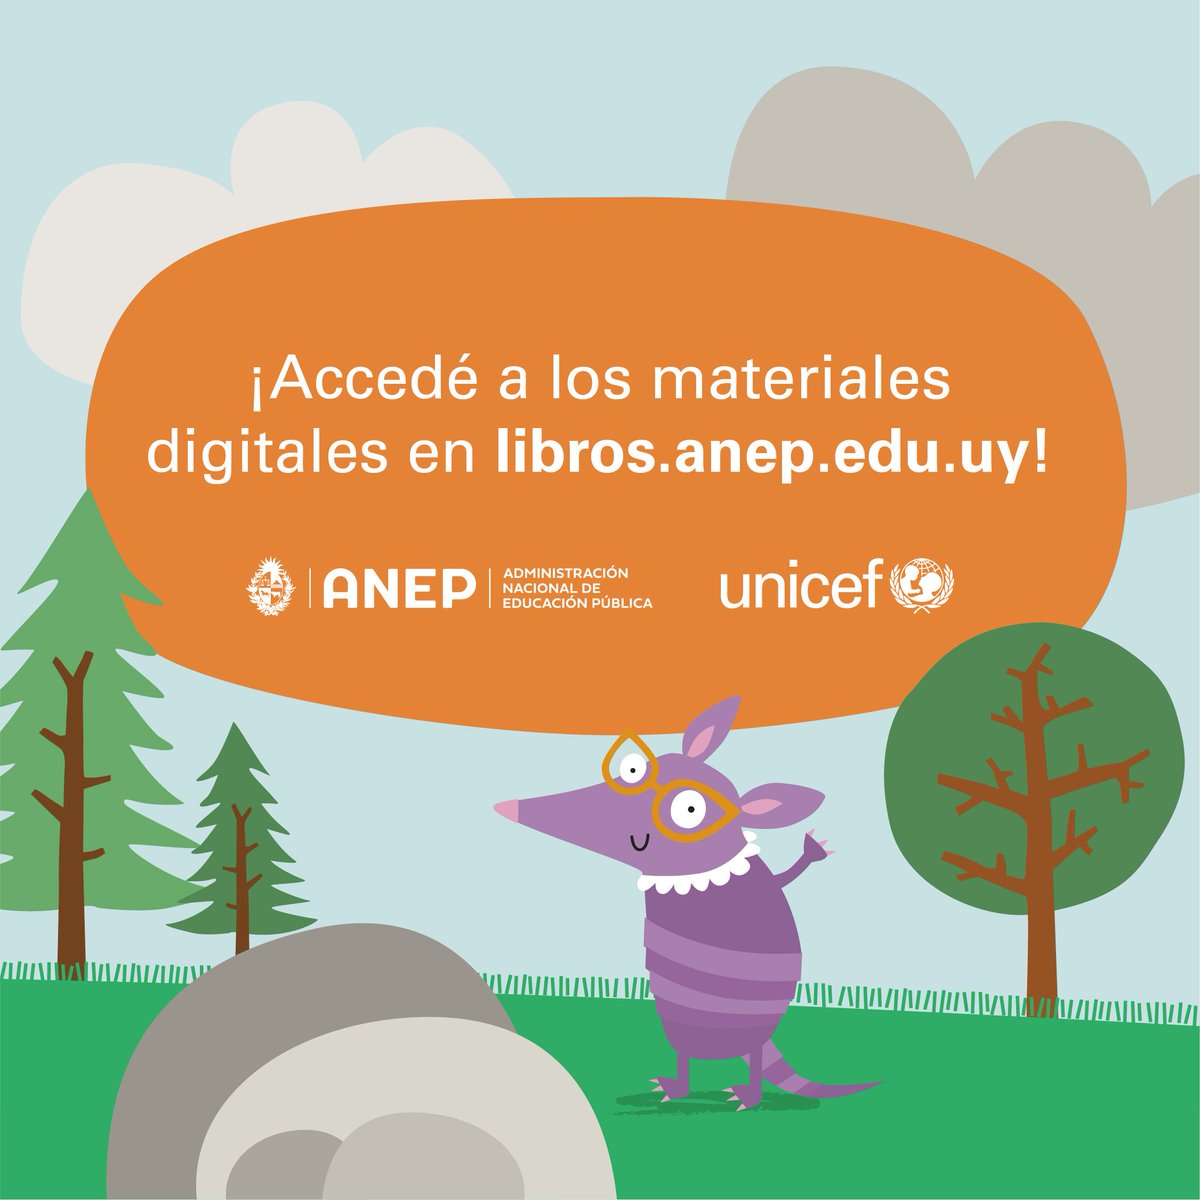 Los cuadernos para leer y escribir (CLE) en primero y segundo vuelven en versión digital accesible. Accedé a la versión digital aquí: libros.anep.edu.uy @ANEP_Uruguay @UNICEFuruguay